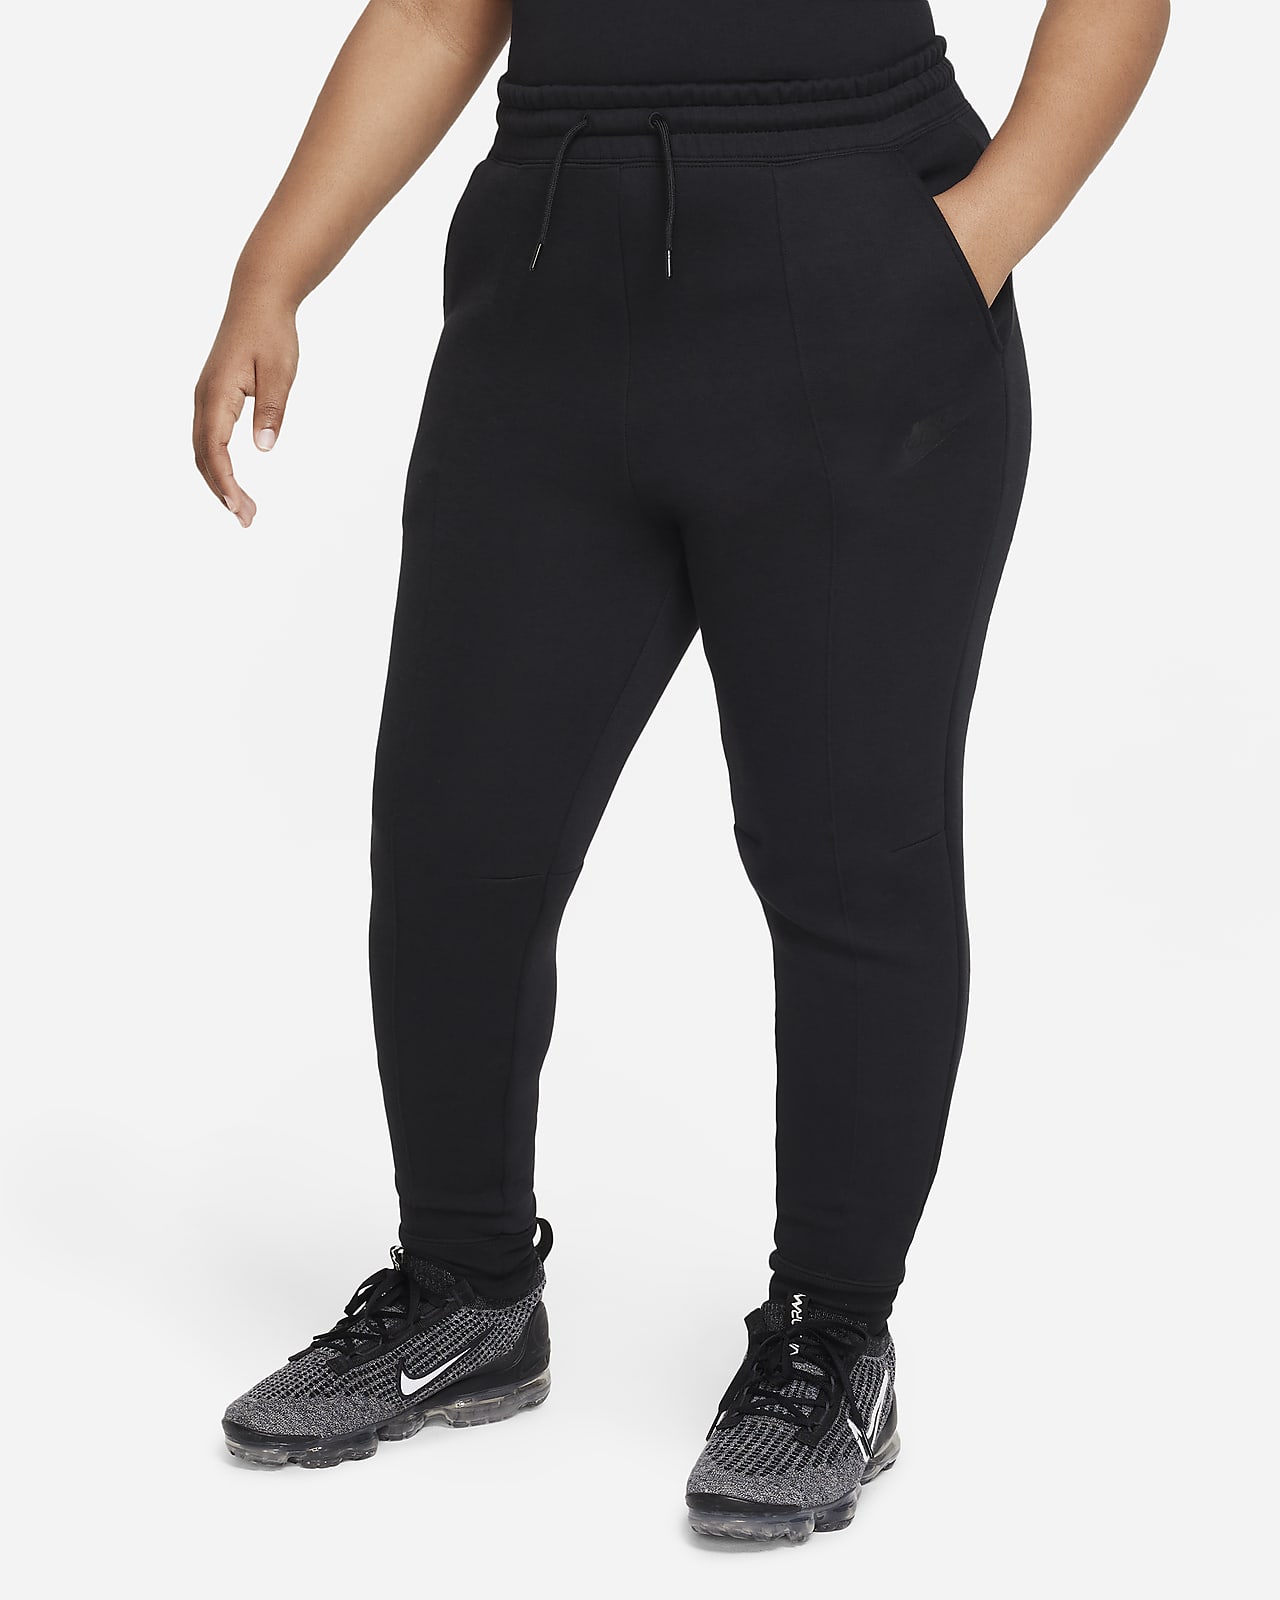 Nike Sportswear Tech Fleece Big Kids' (Girls') Joggers (Extended Size)